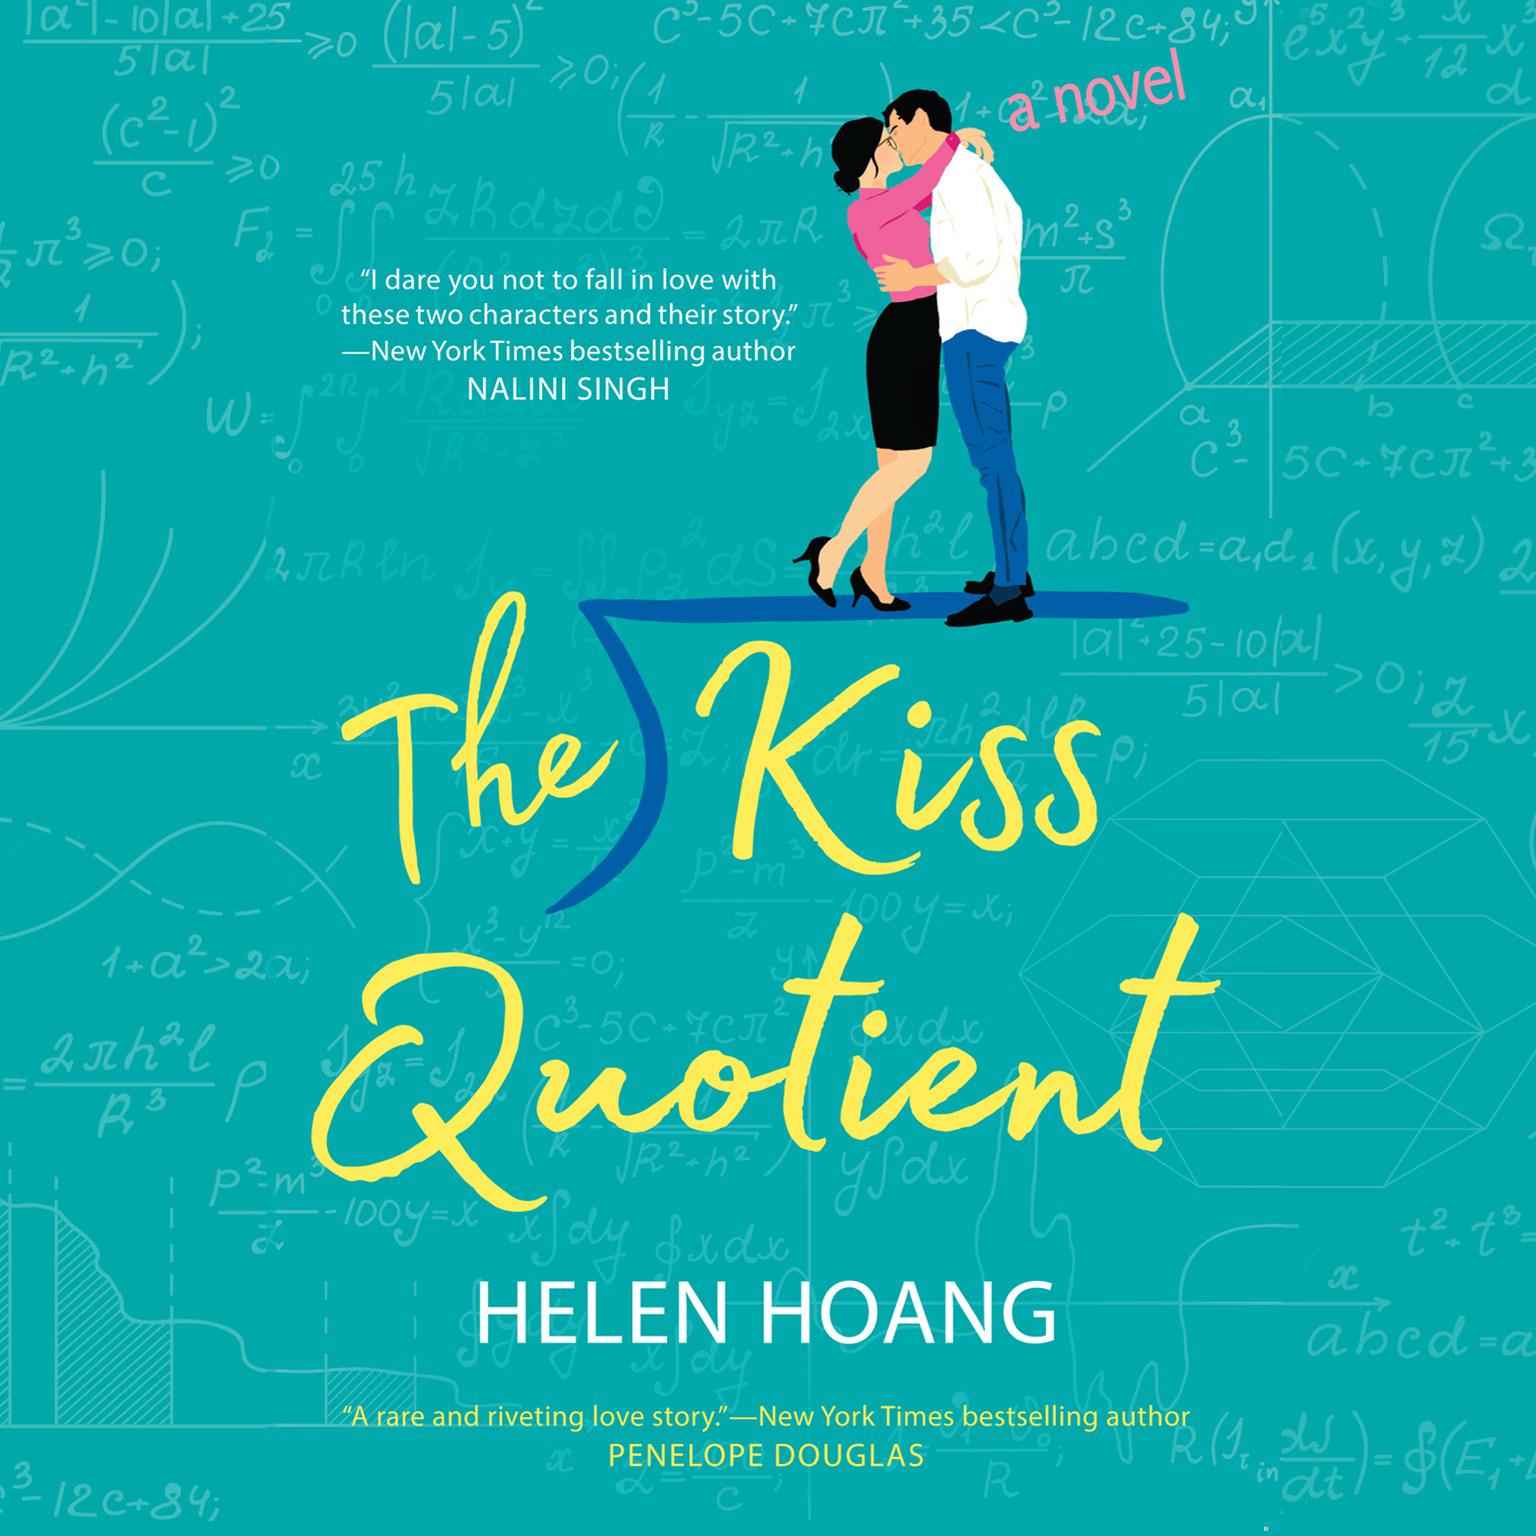 The kiss quotient (2018)